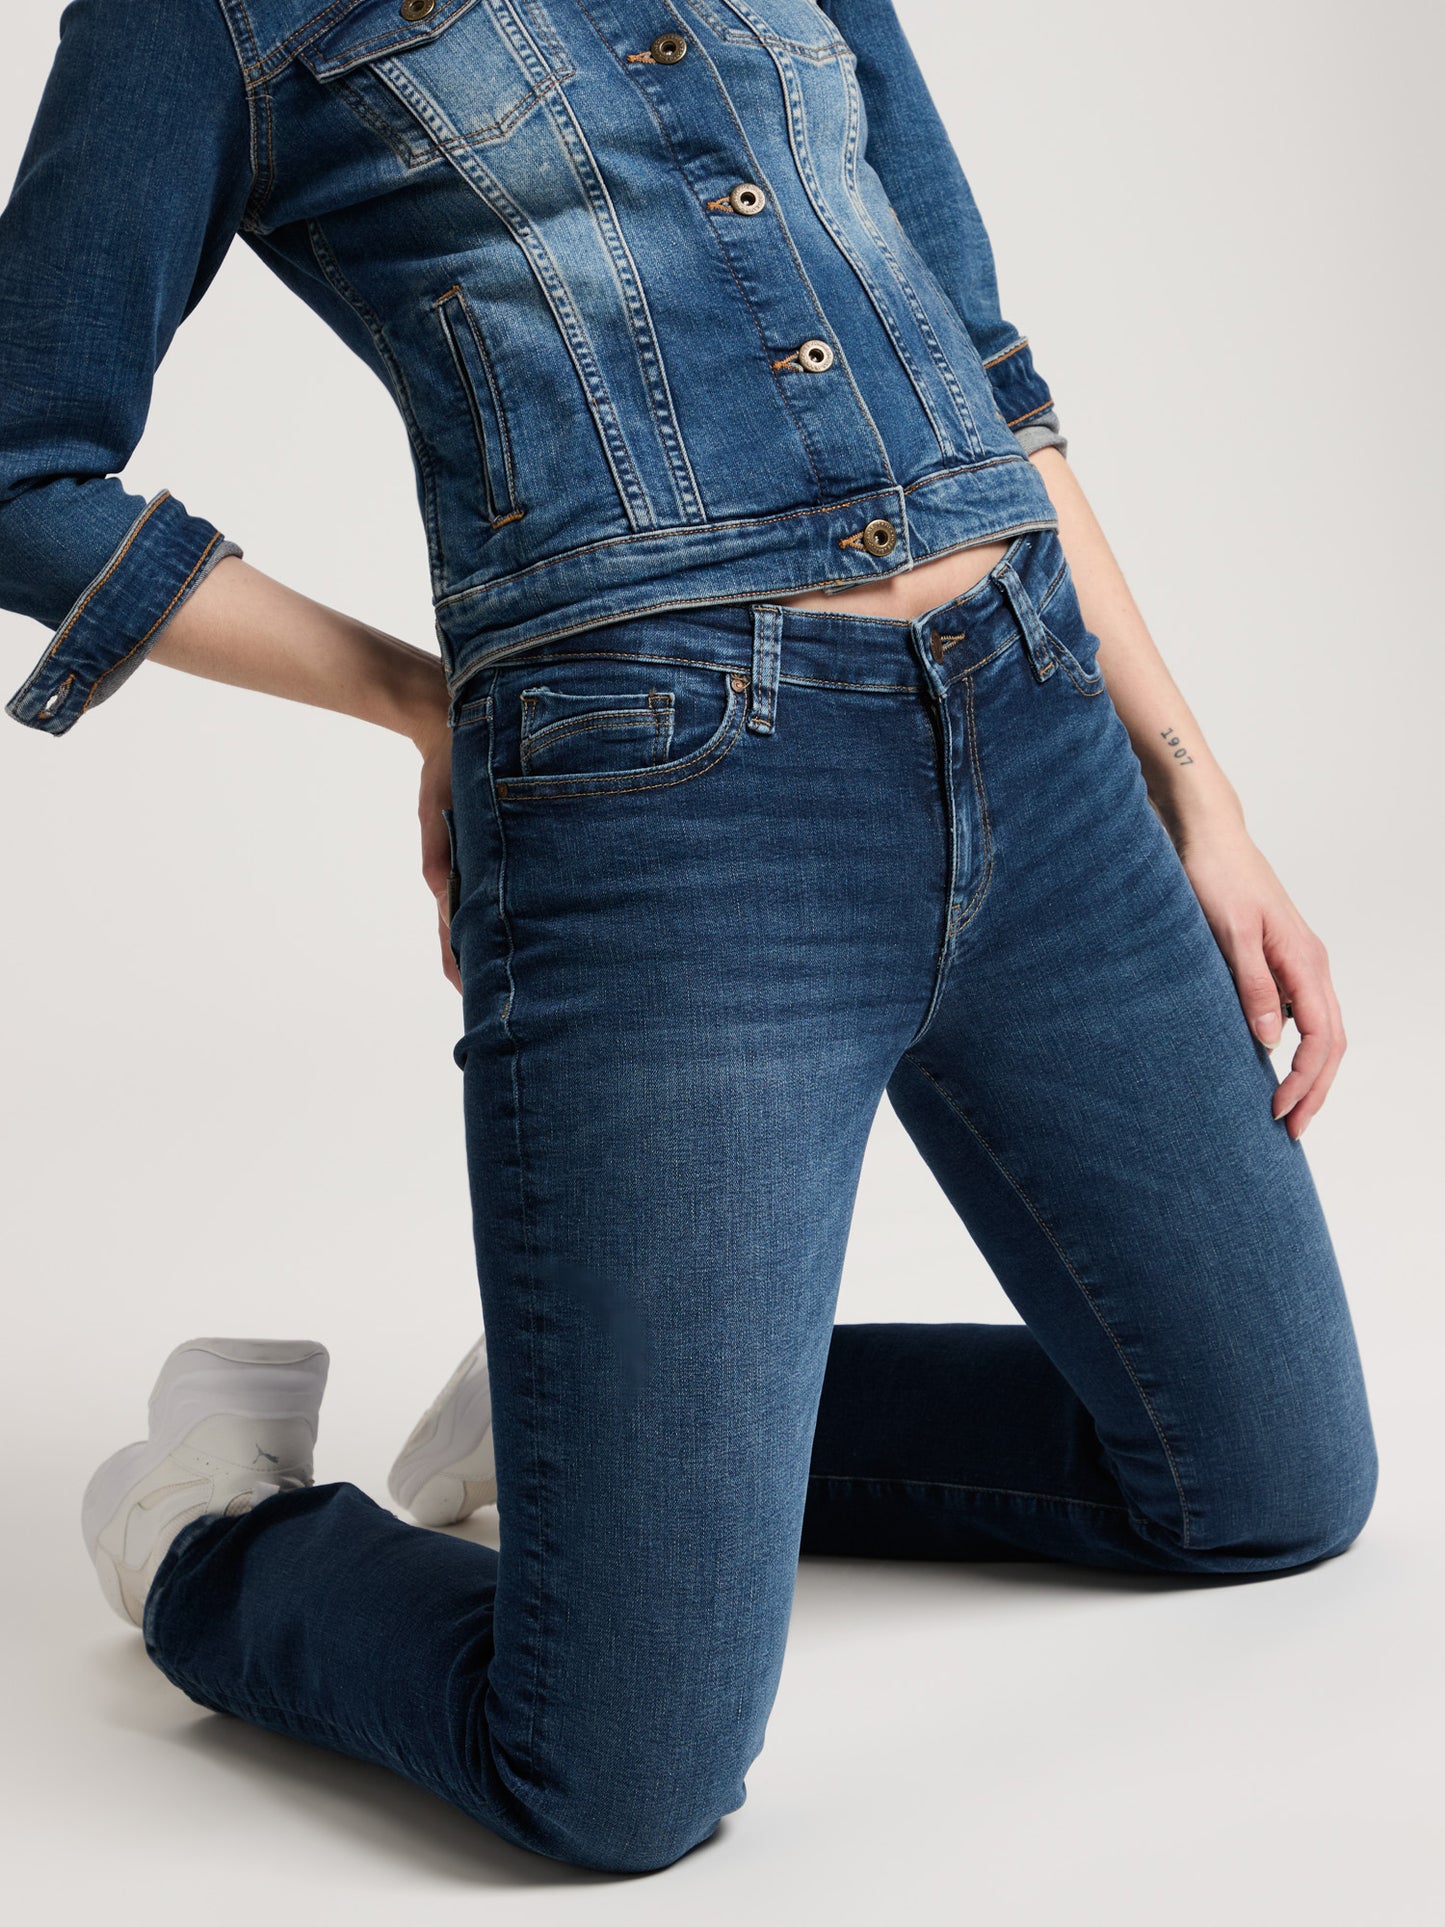 Lauren Damen Jeans Regular Fit High Waist Bootcut dunkelblau